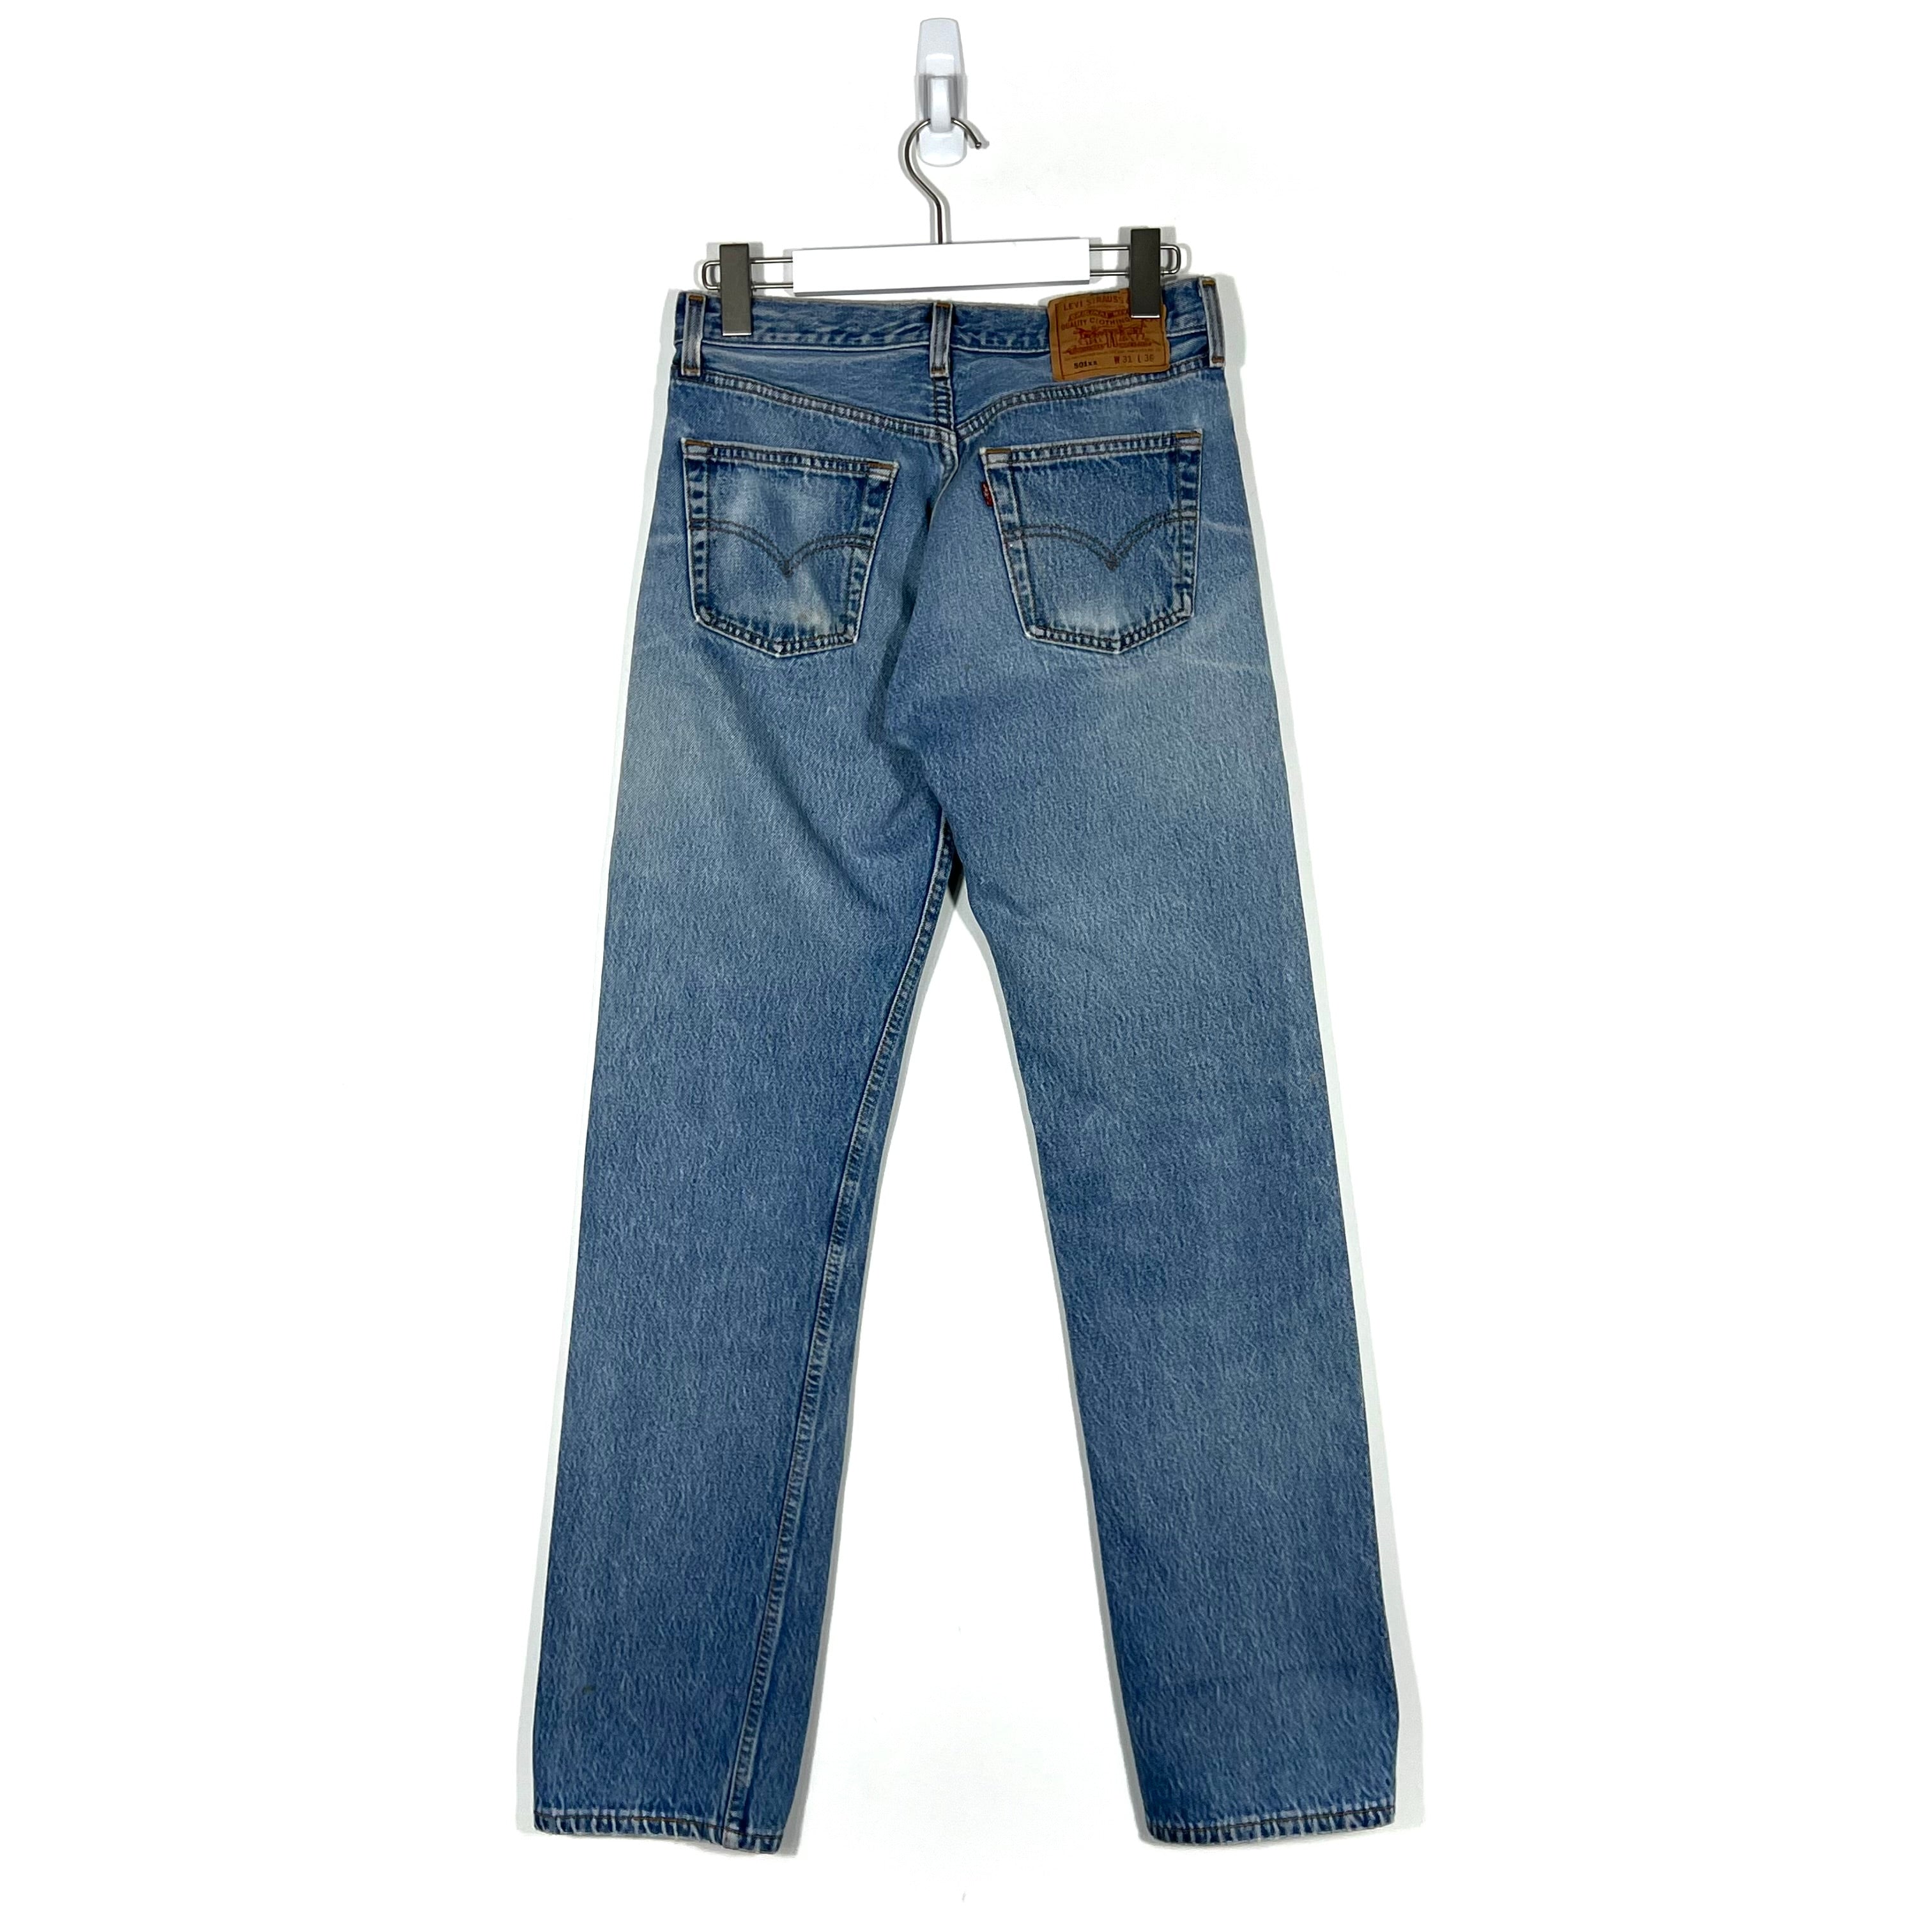 Vintage Levis 501 Jeans - Women's 31/36